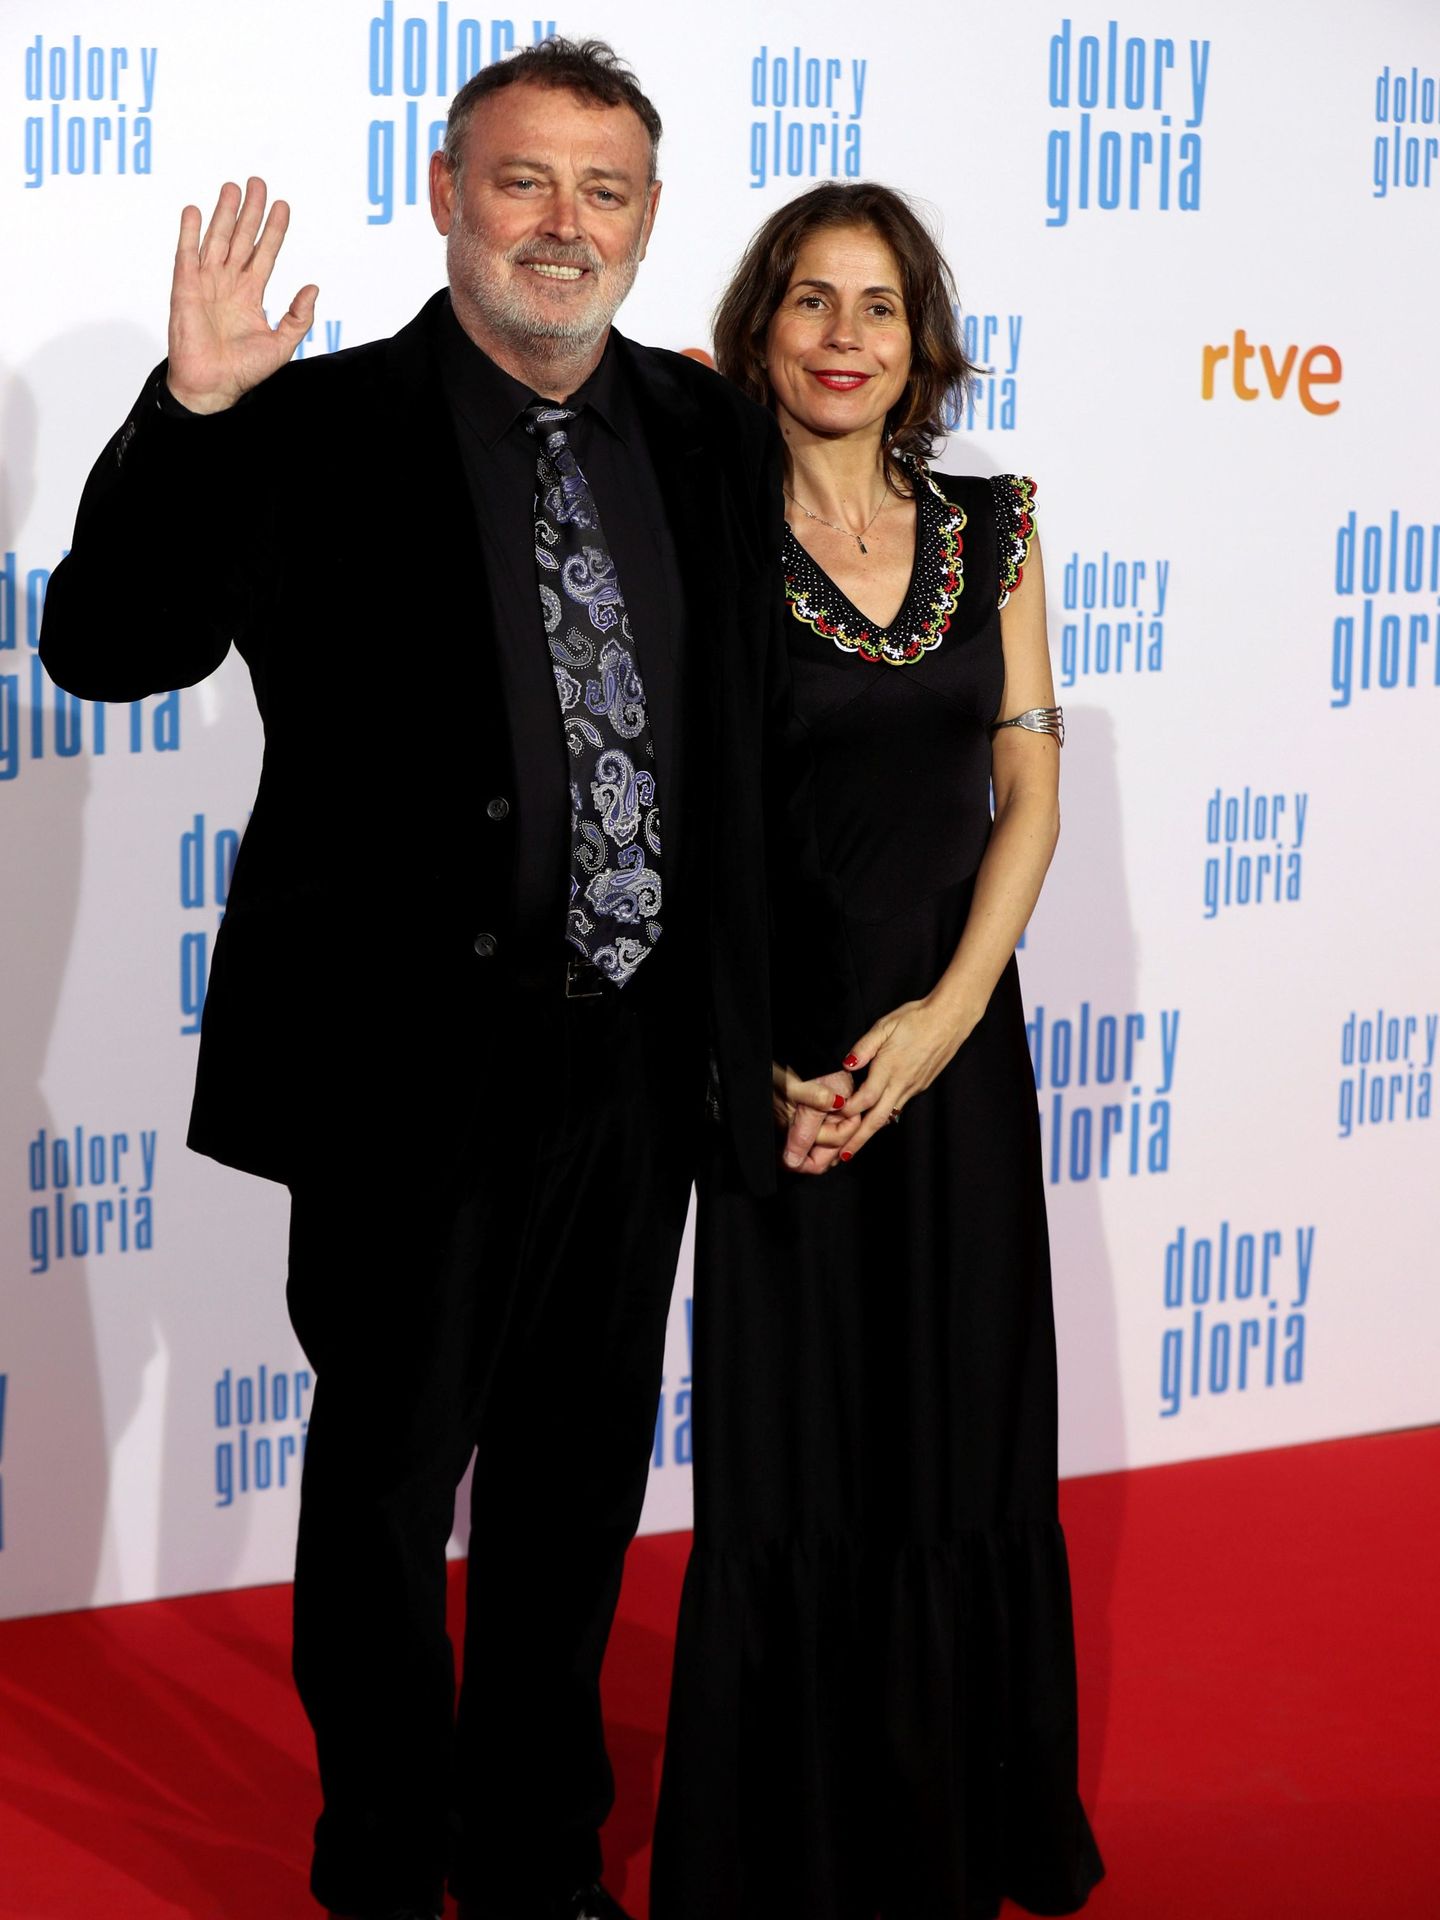 El actor Pablo Carbonell y su esposa María Arellano, en la premier de la película 'Dolor y gloria'. (EFE)